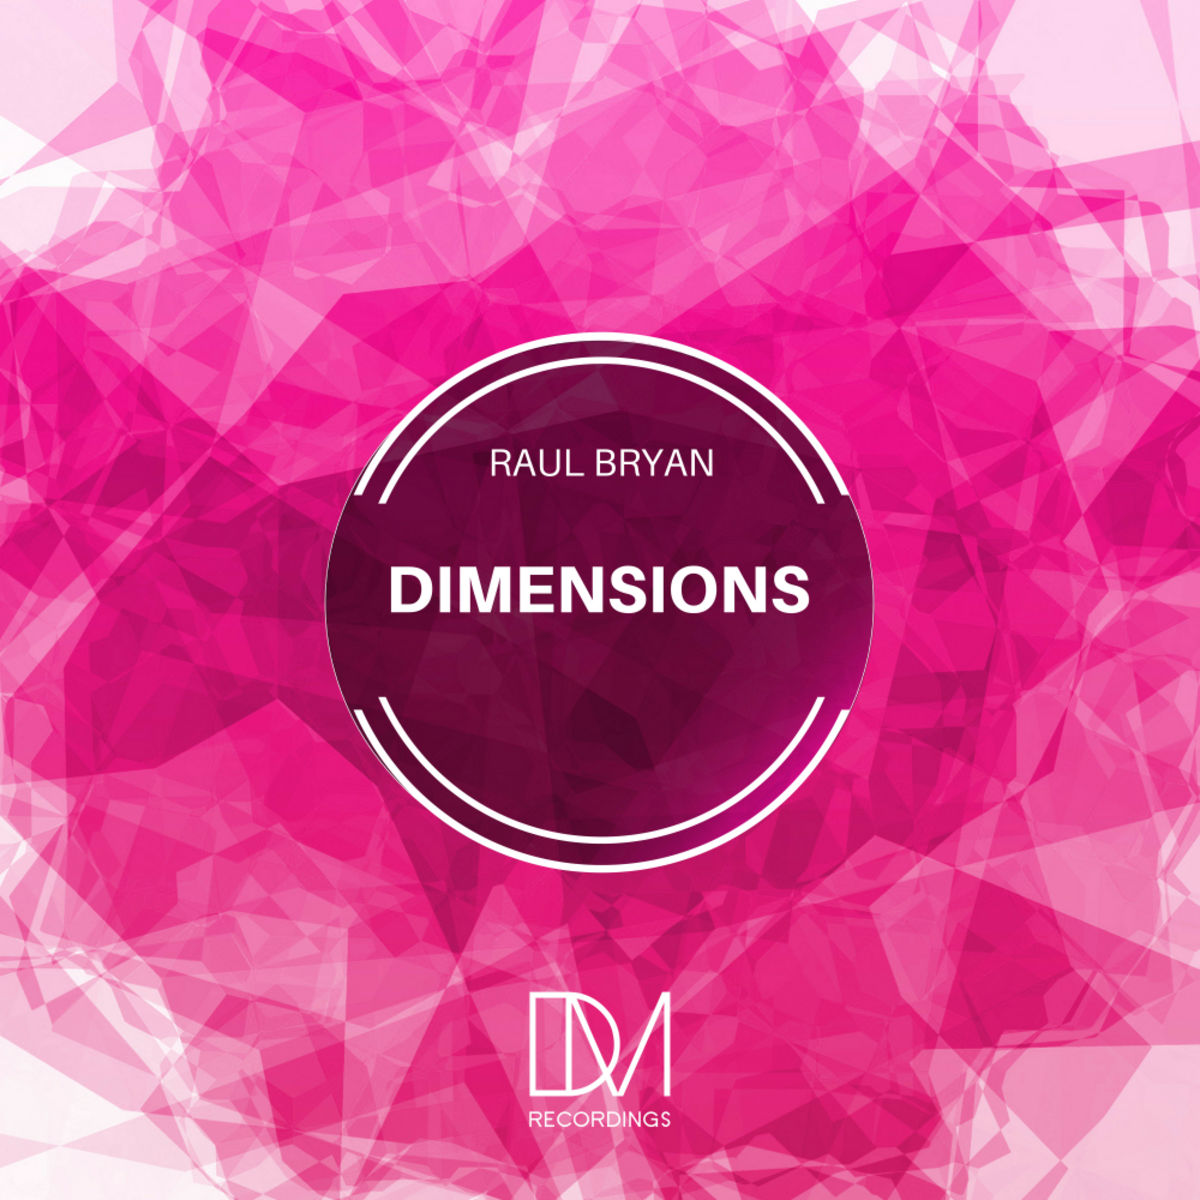 Raul Bryan - Dimensions / DM.Recordings